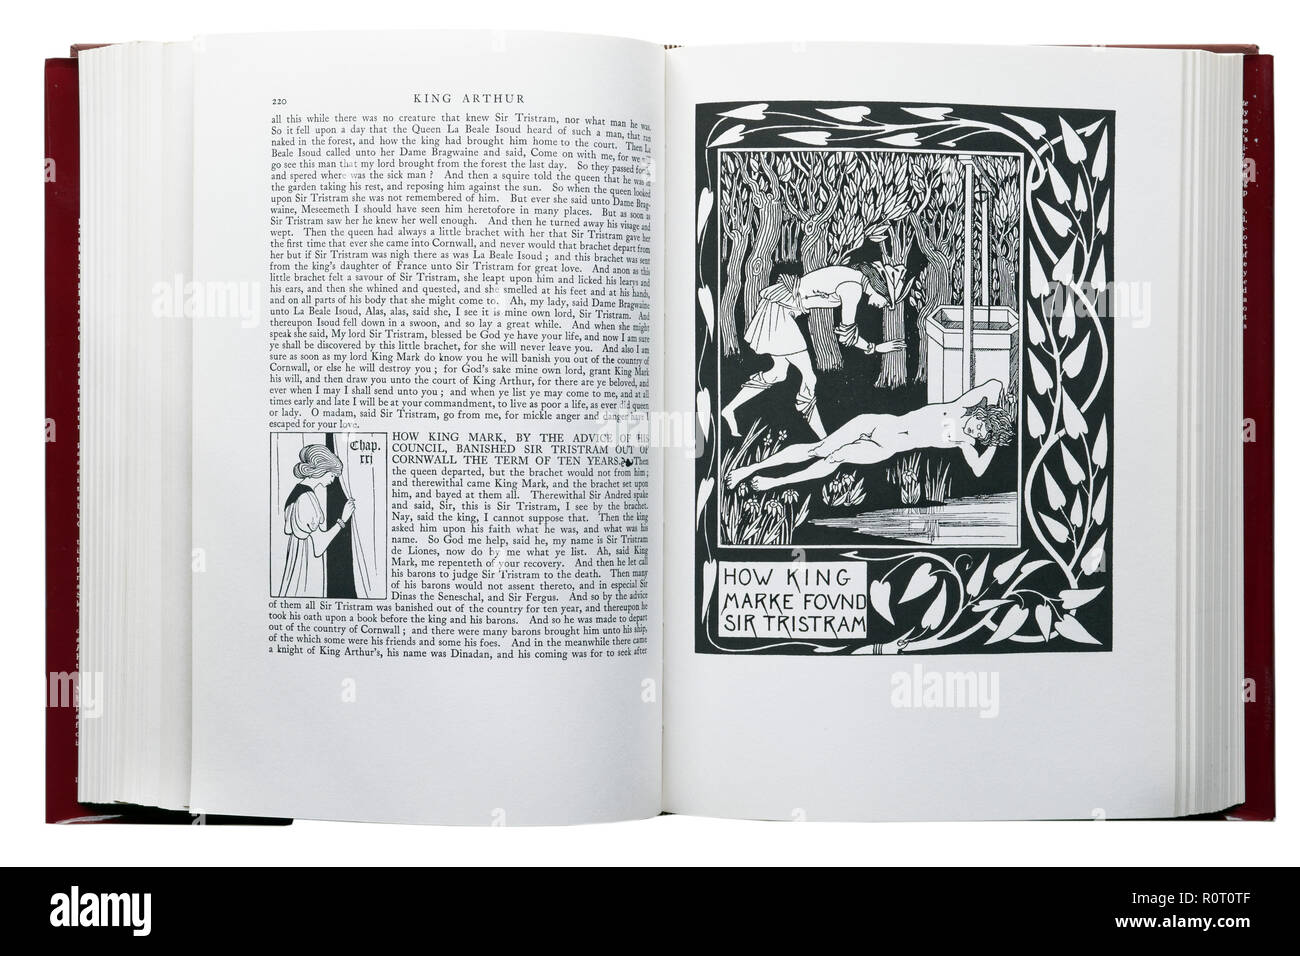 Le morte d'Arthur de Sir Thomas Malory. Illustration comment le roi Marke trouvés Sir Tristram par Aubrey Beardsley Banque D'Images